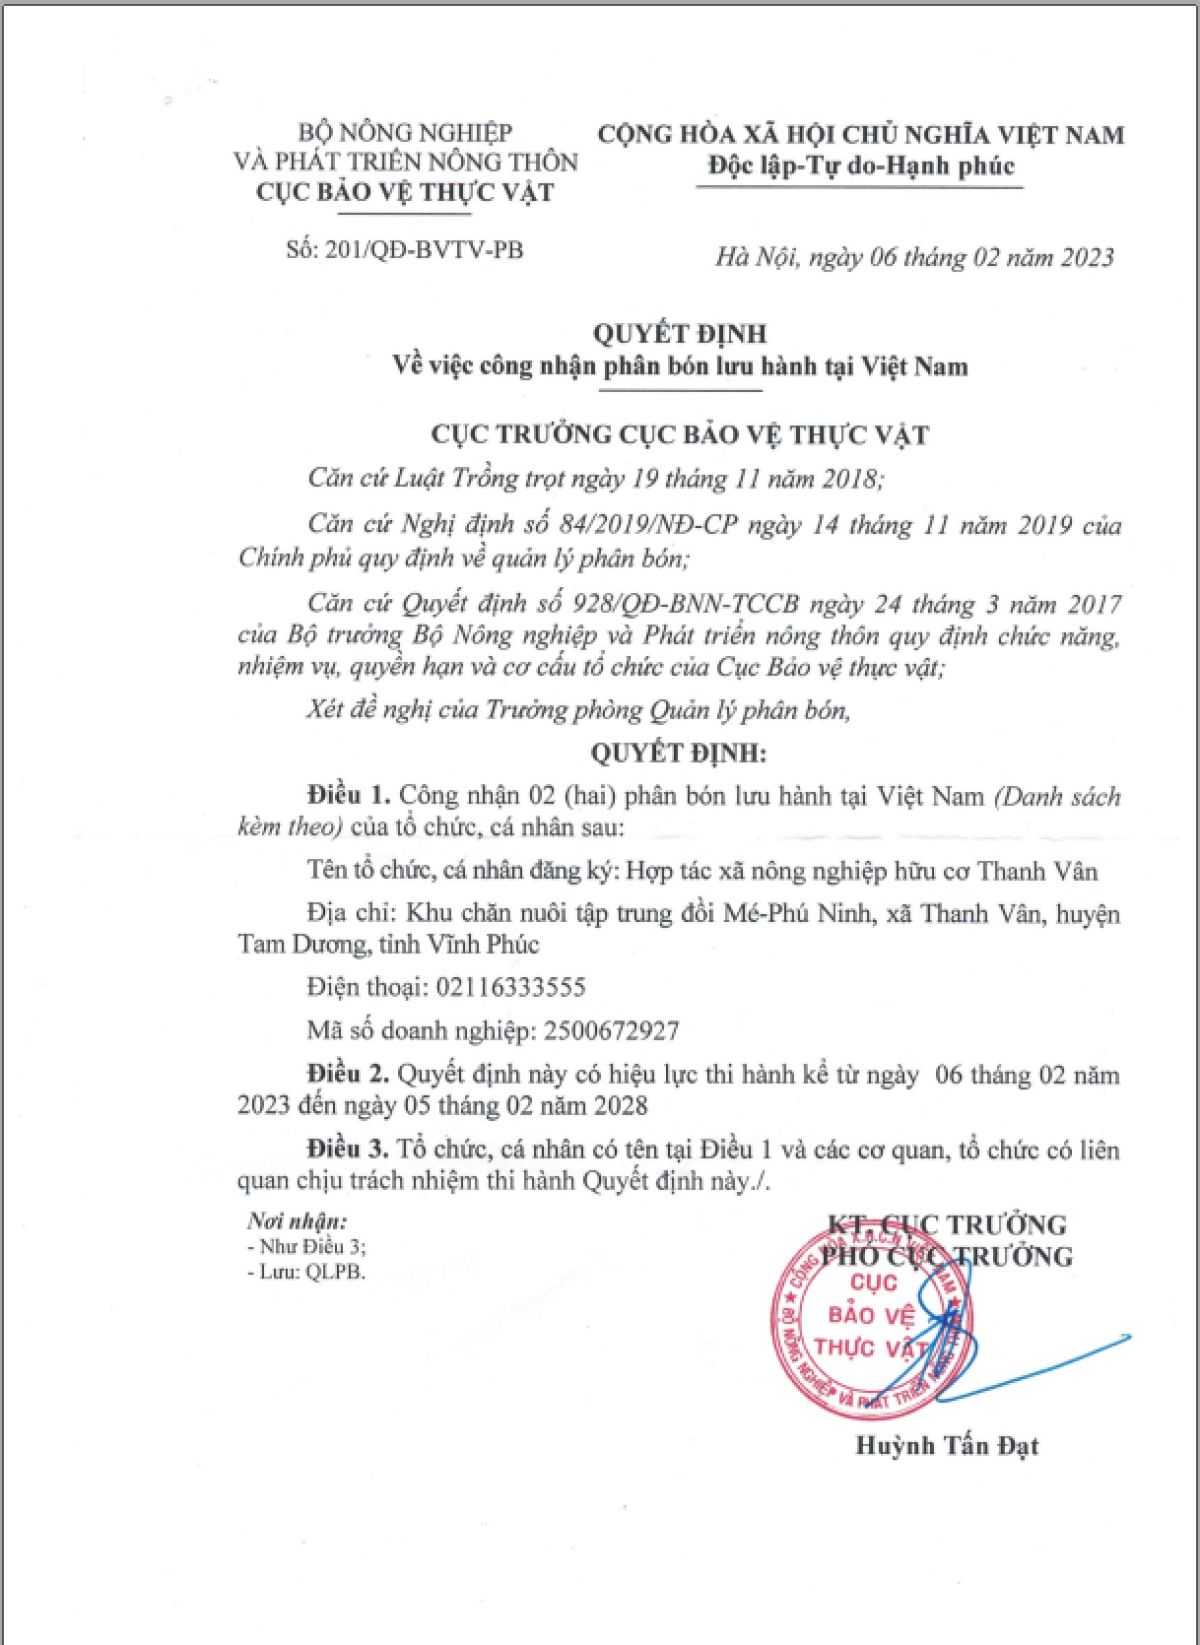 Quyết định về việc công nhận phân bón lưu hành tại Việt Nam.